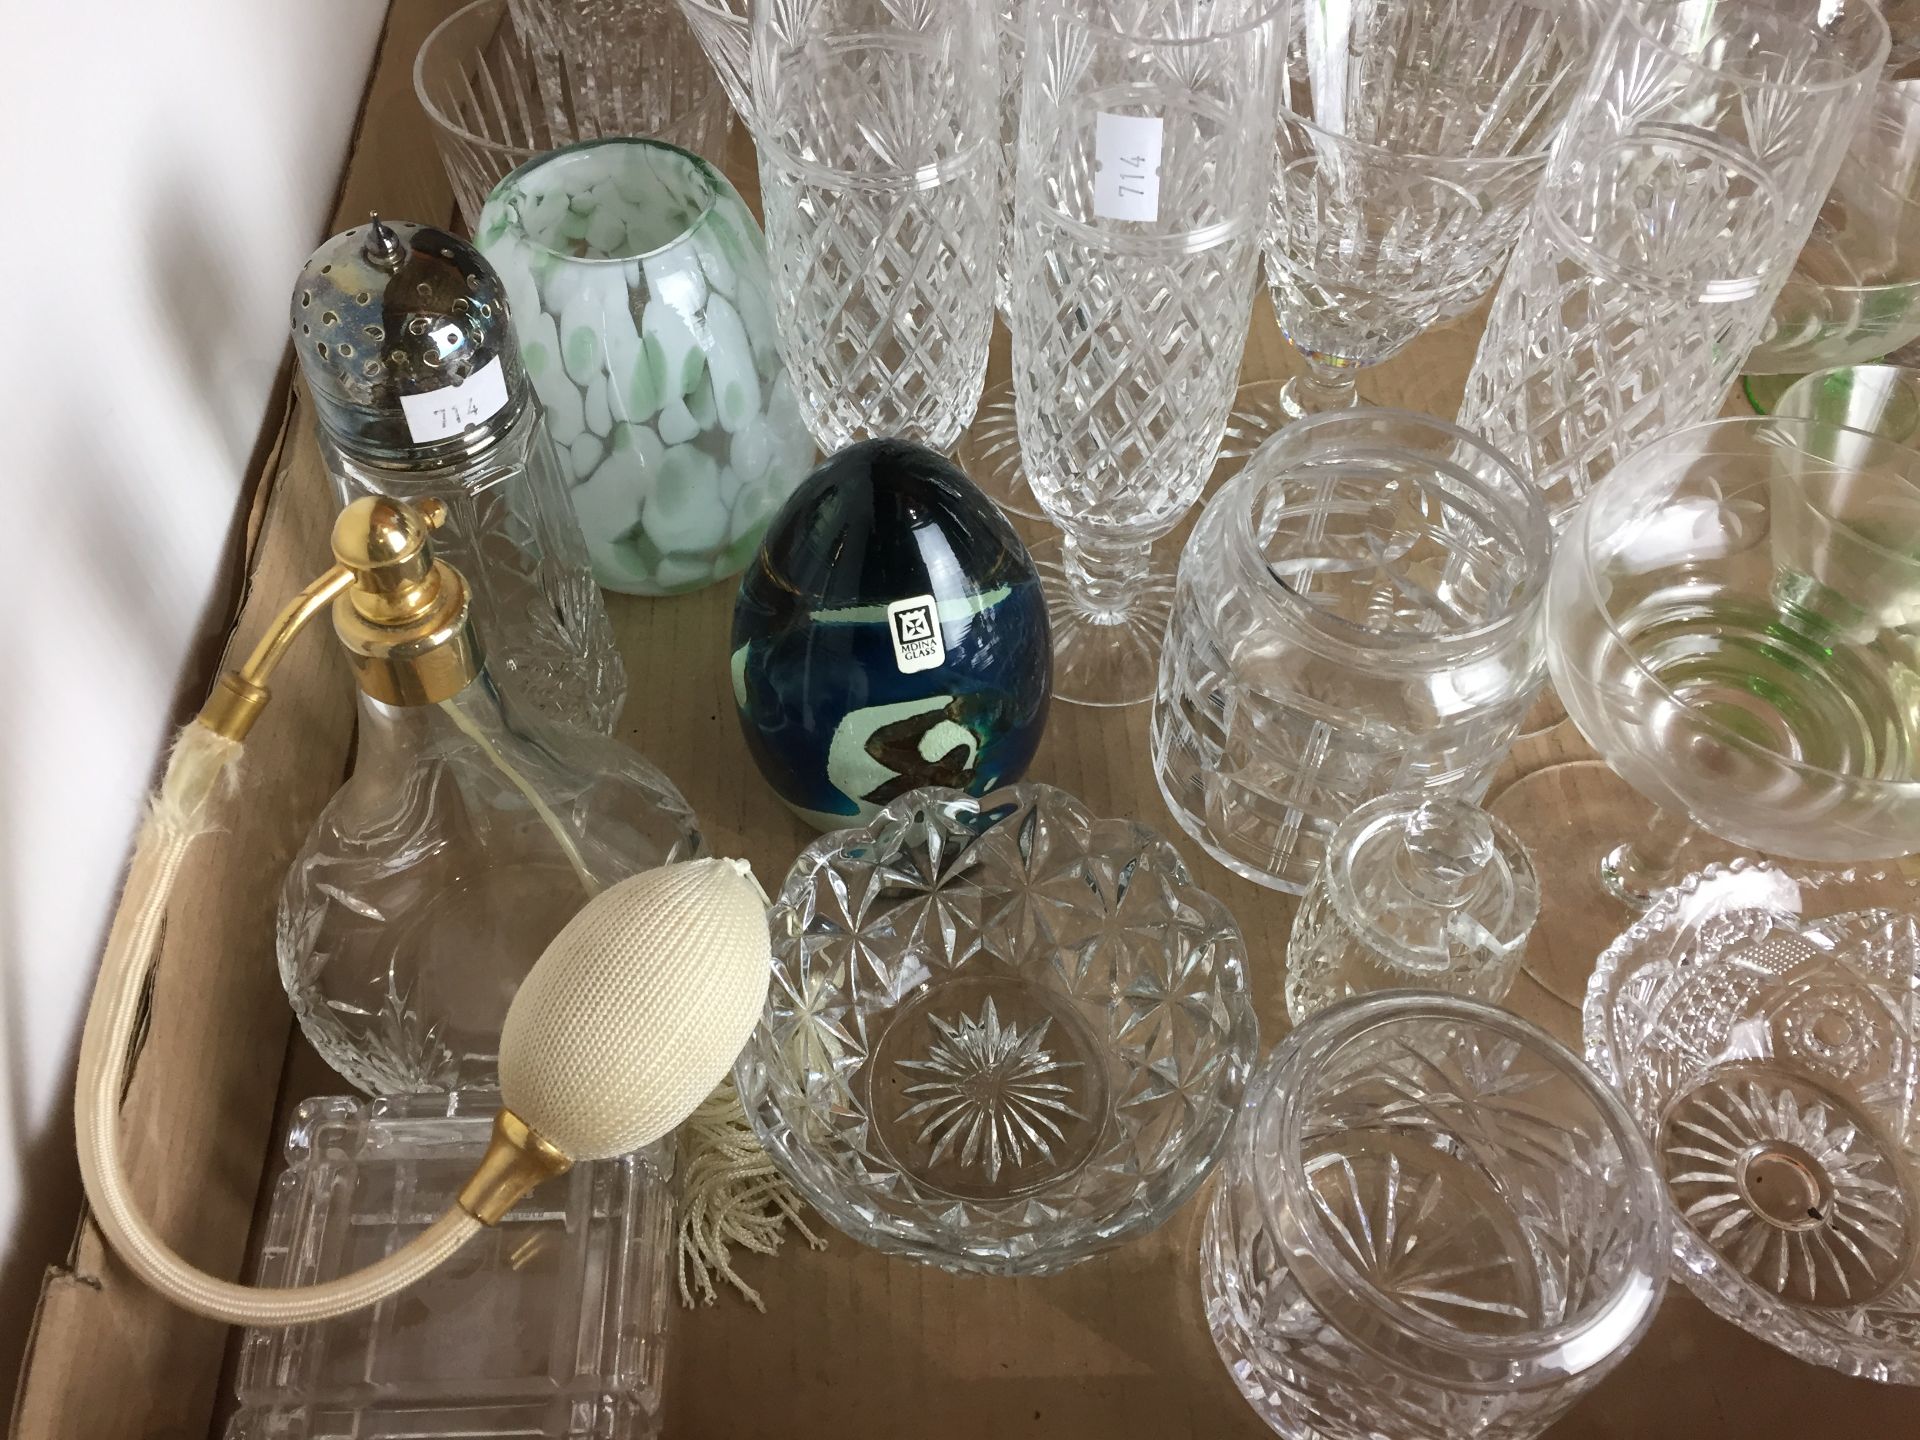 60+ items of glassware including 22cm diam trifle bowl, 27cm diam fruit bowl, - Image 2 of 5